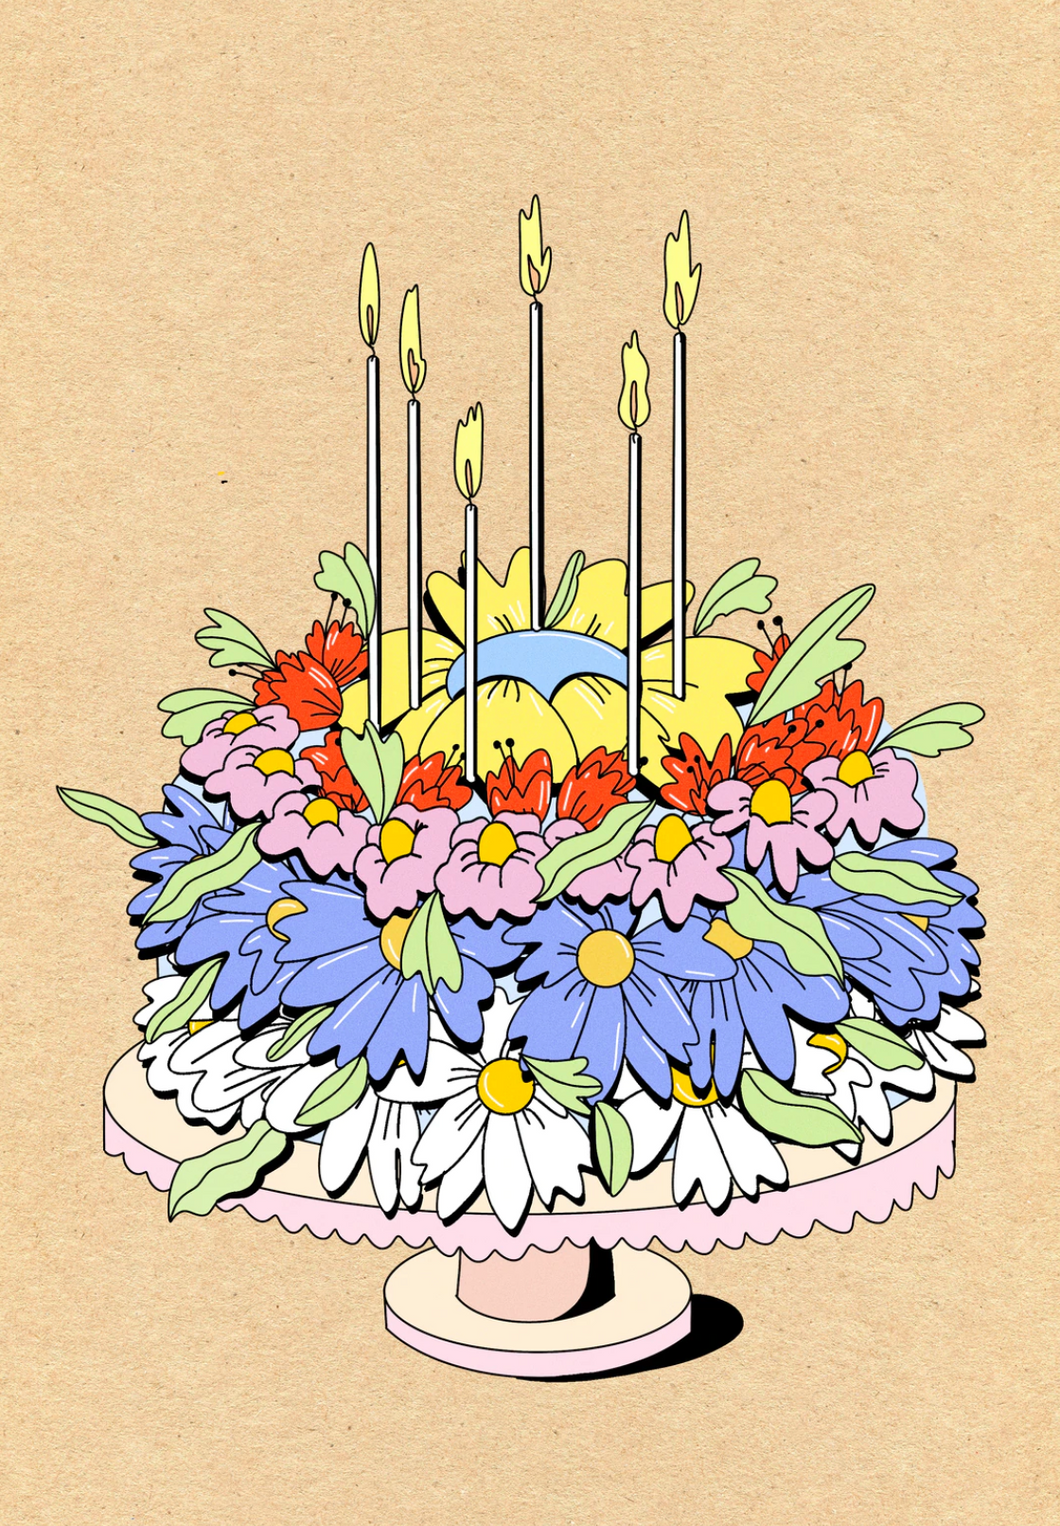 Cake in Bloom